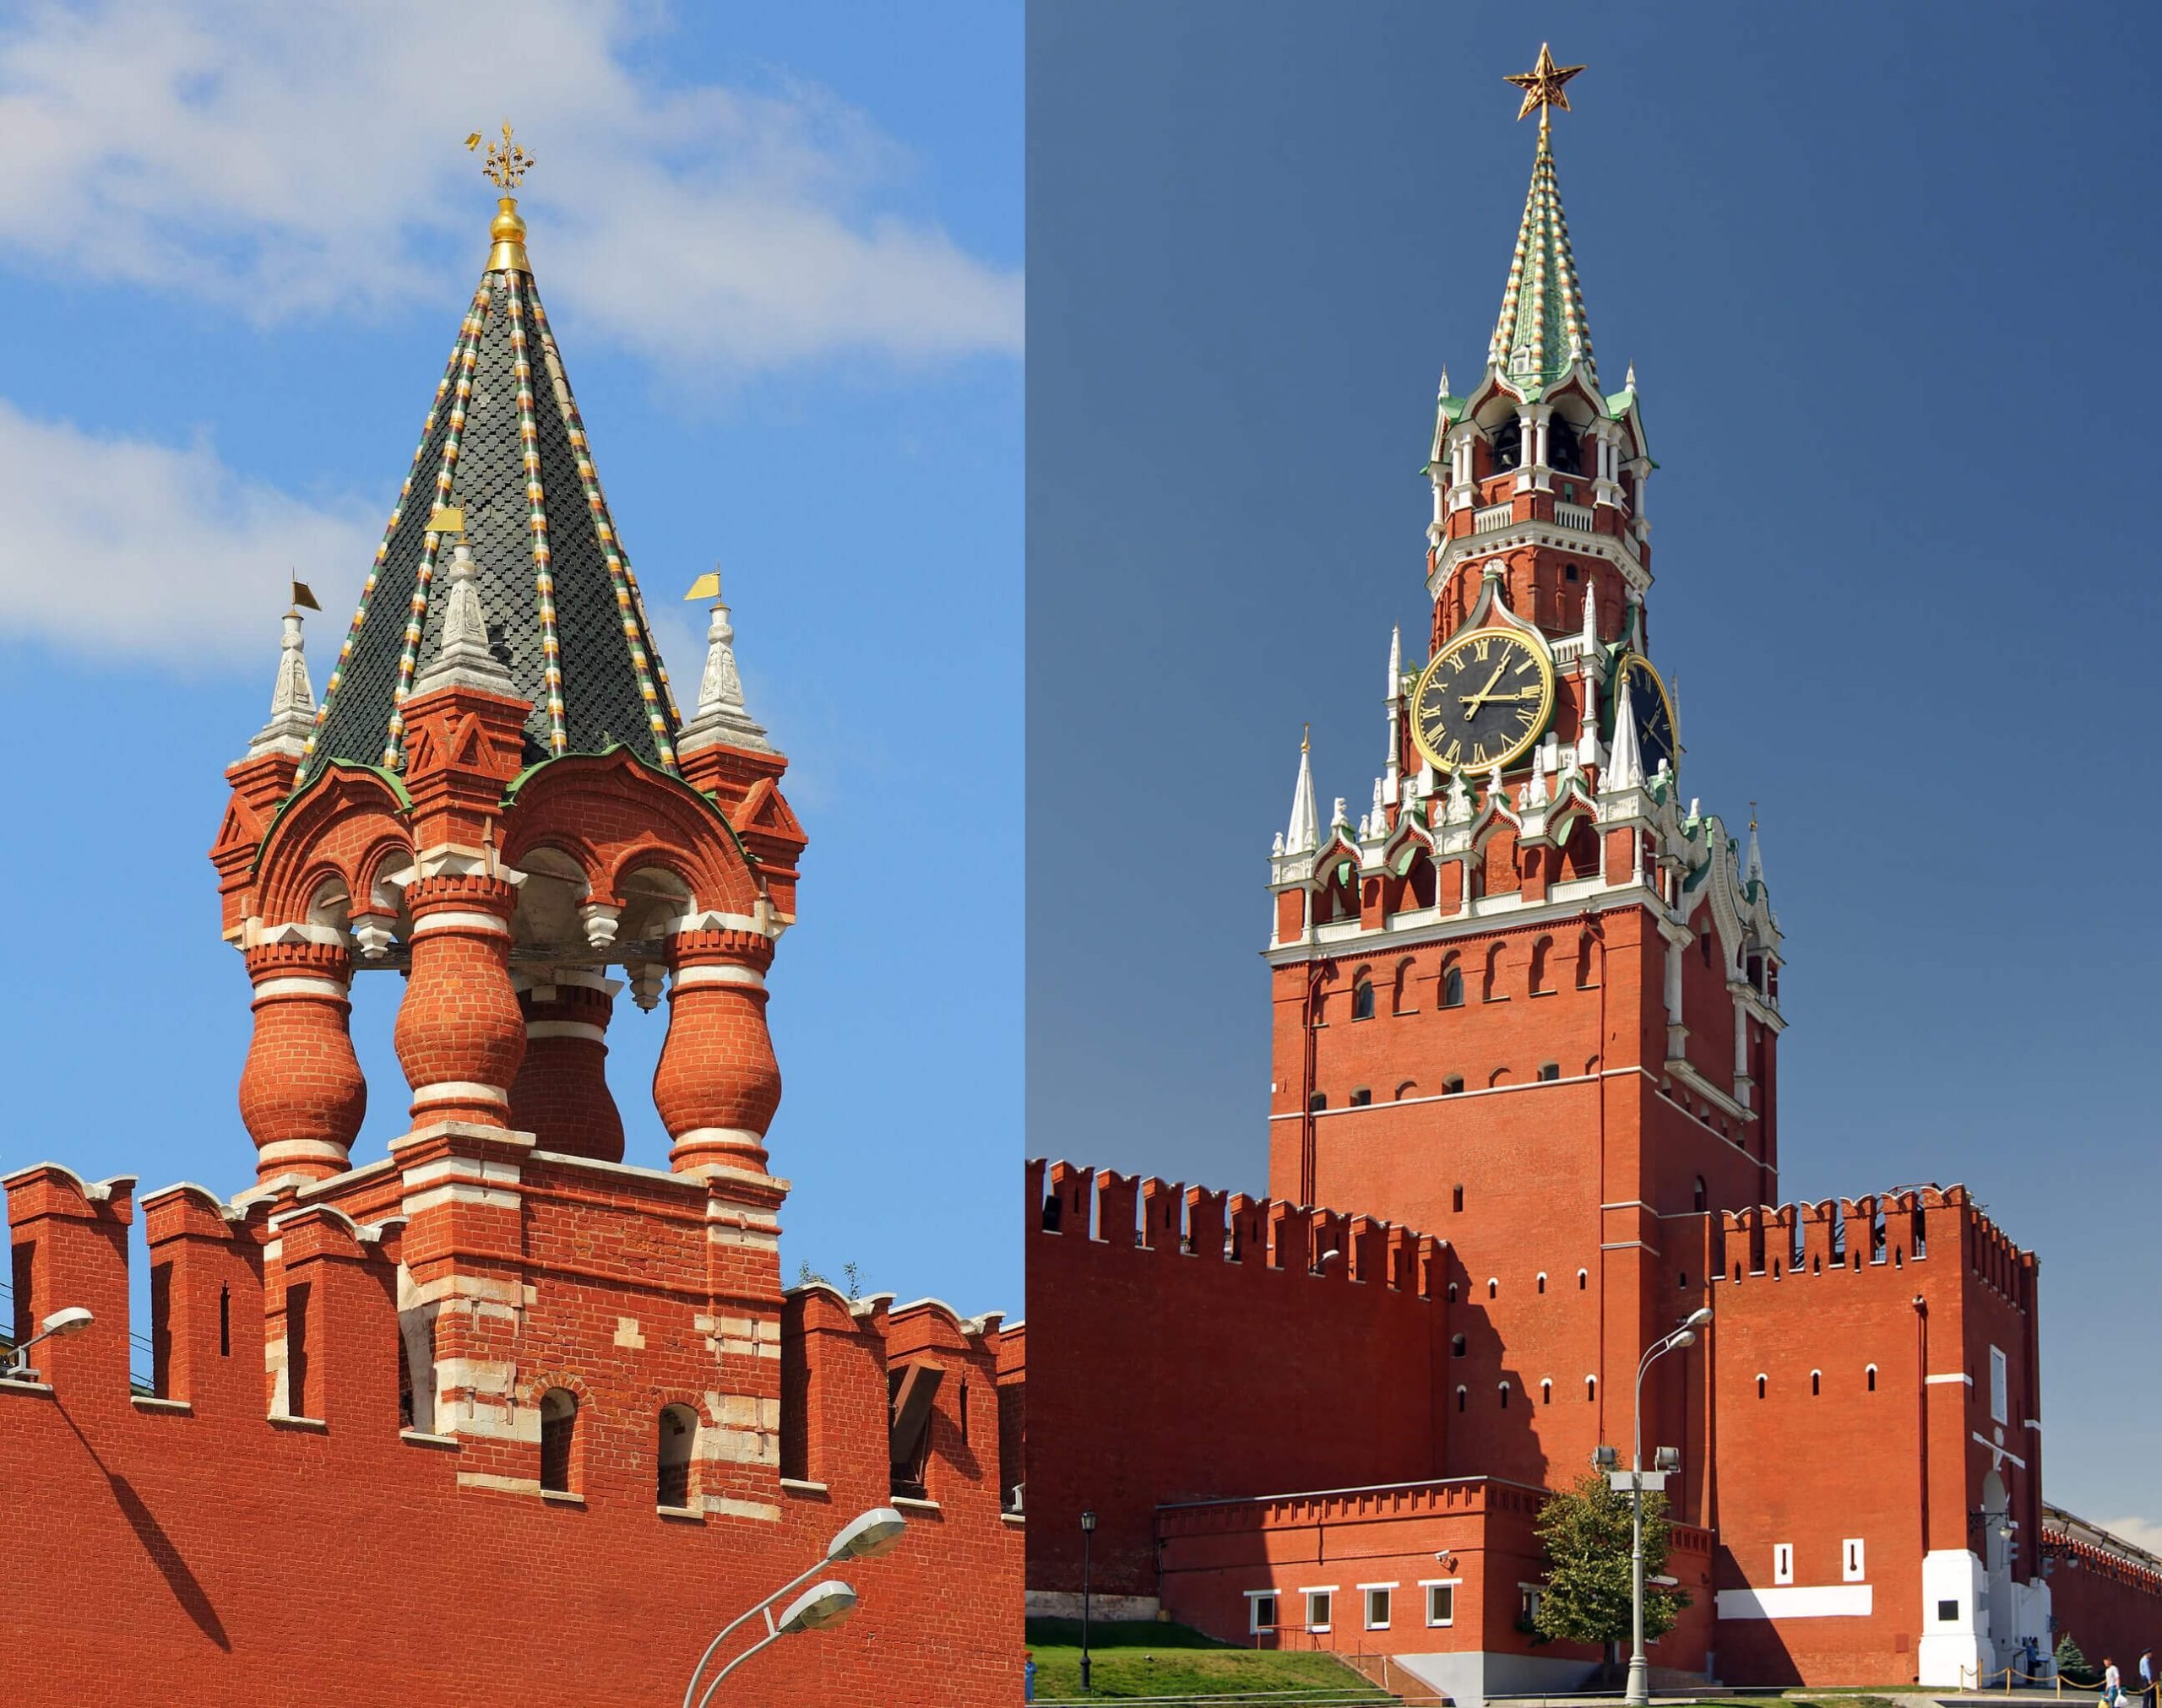 История спасской башни московского кремля